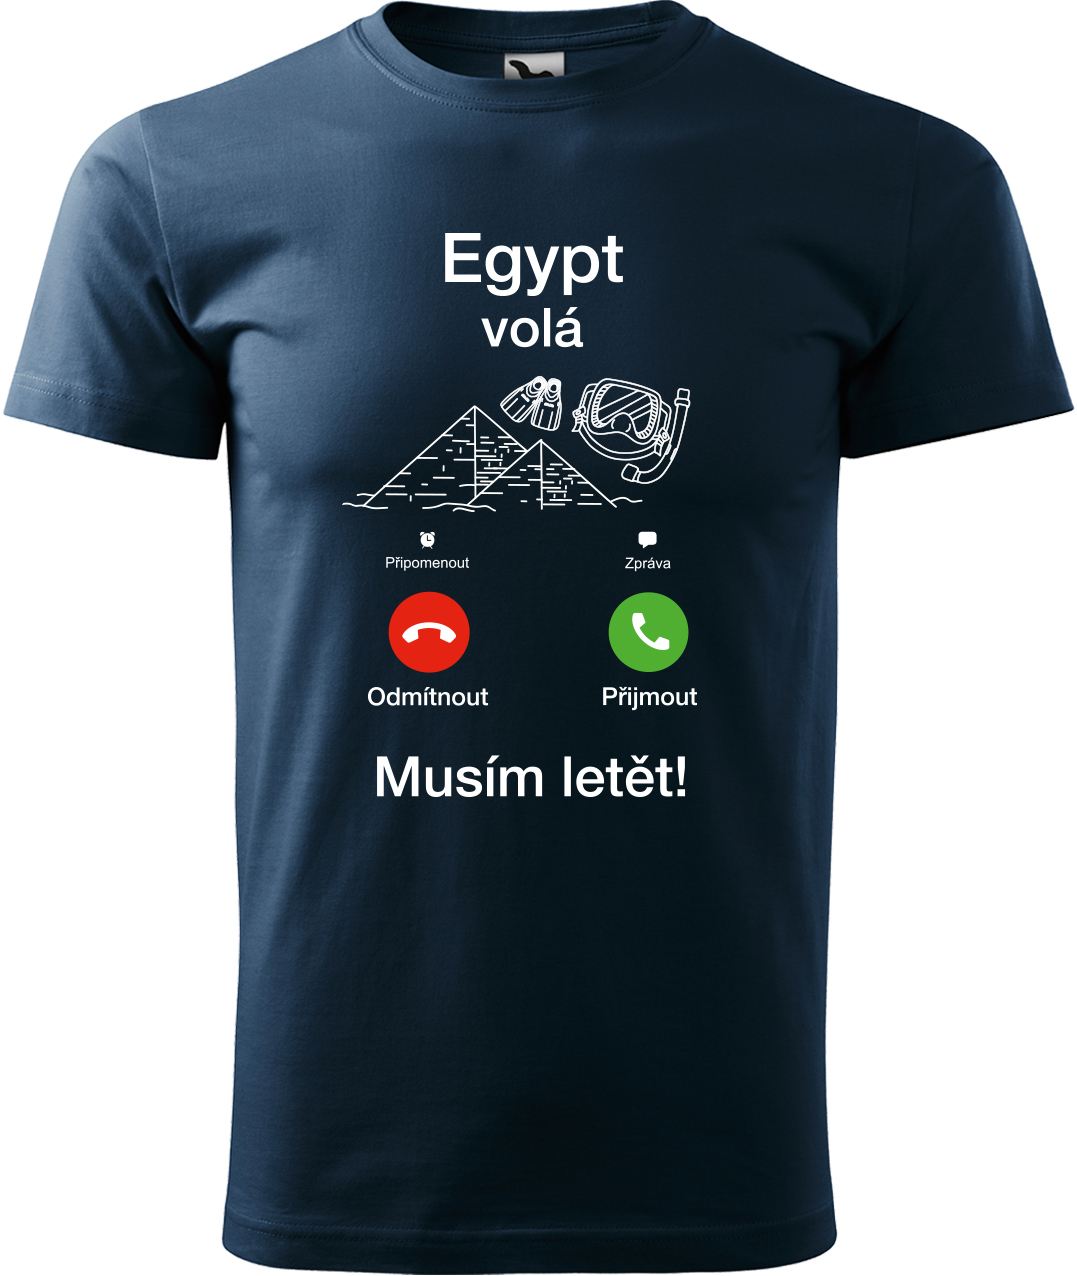 Pánské cestovatelské tričko - Egypt volá - musím letět! Velikost: XL, Barva: Námořní modrá (02), Střih: pánský